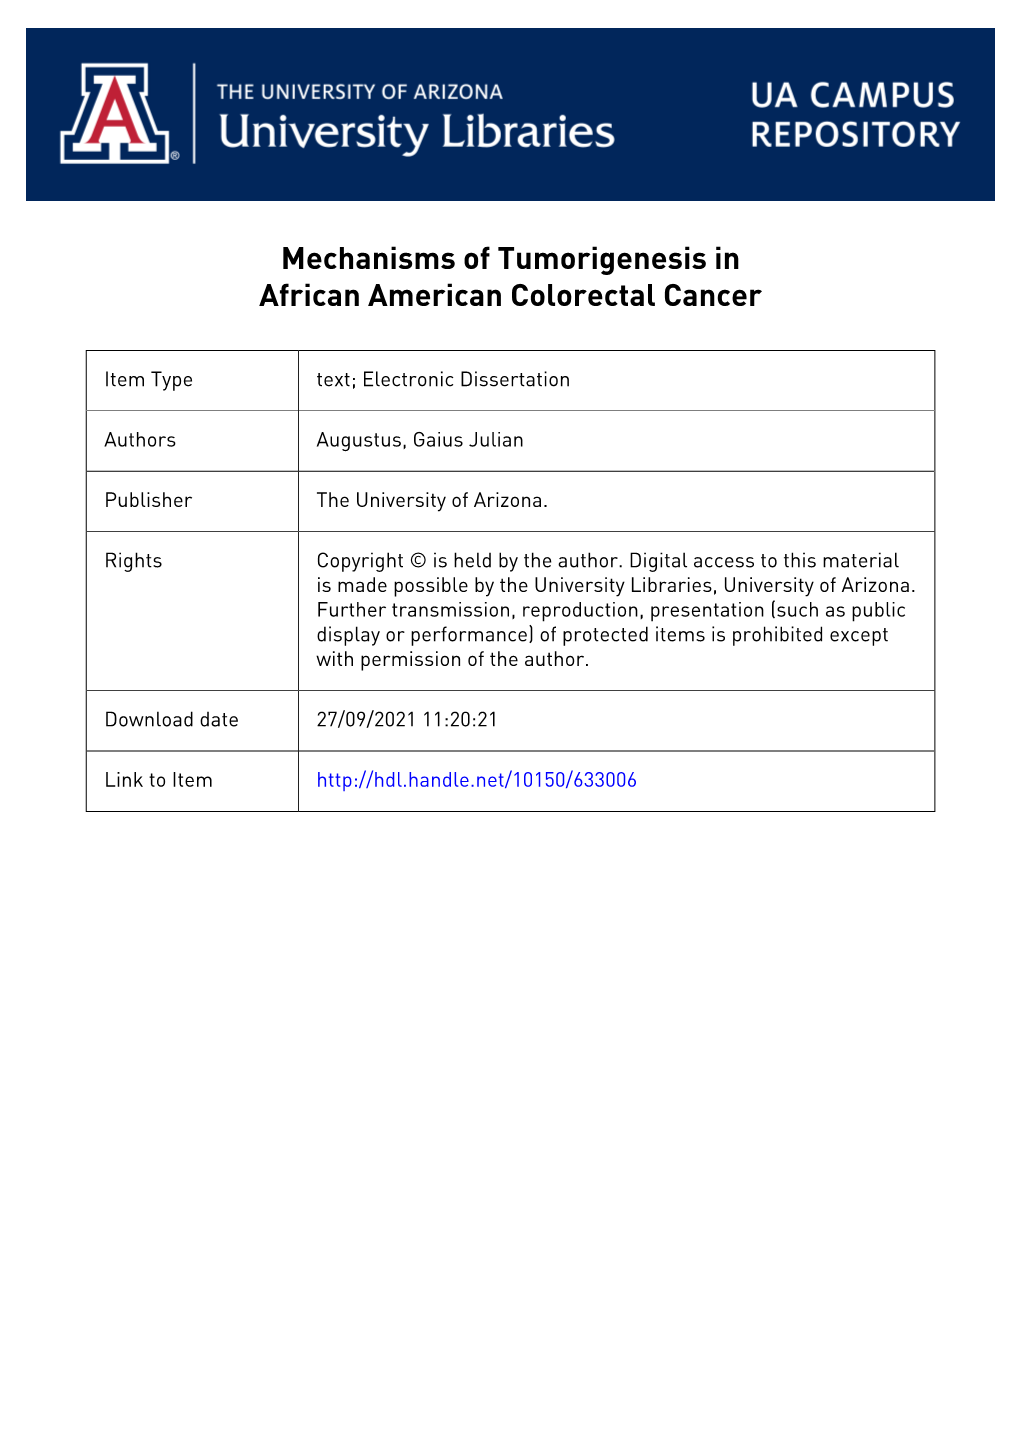 MECHANISMS of TUMORIGENESIS in AFRICAN AMERICAN COLORECTAL CANCER by Gaius J. Augustus